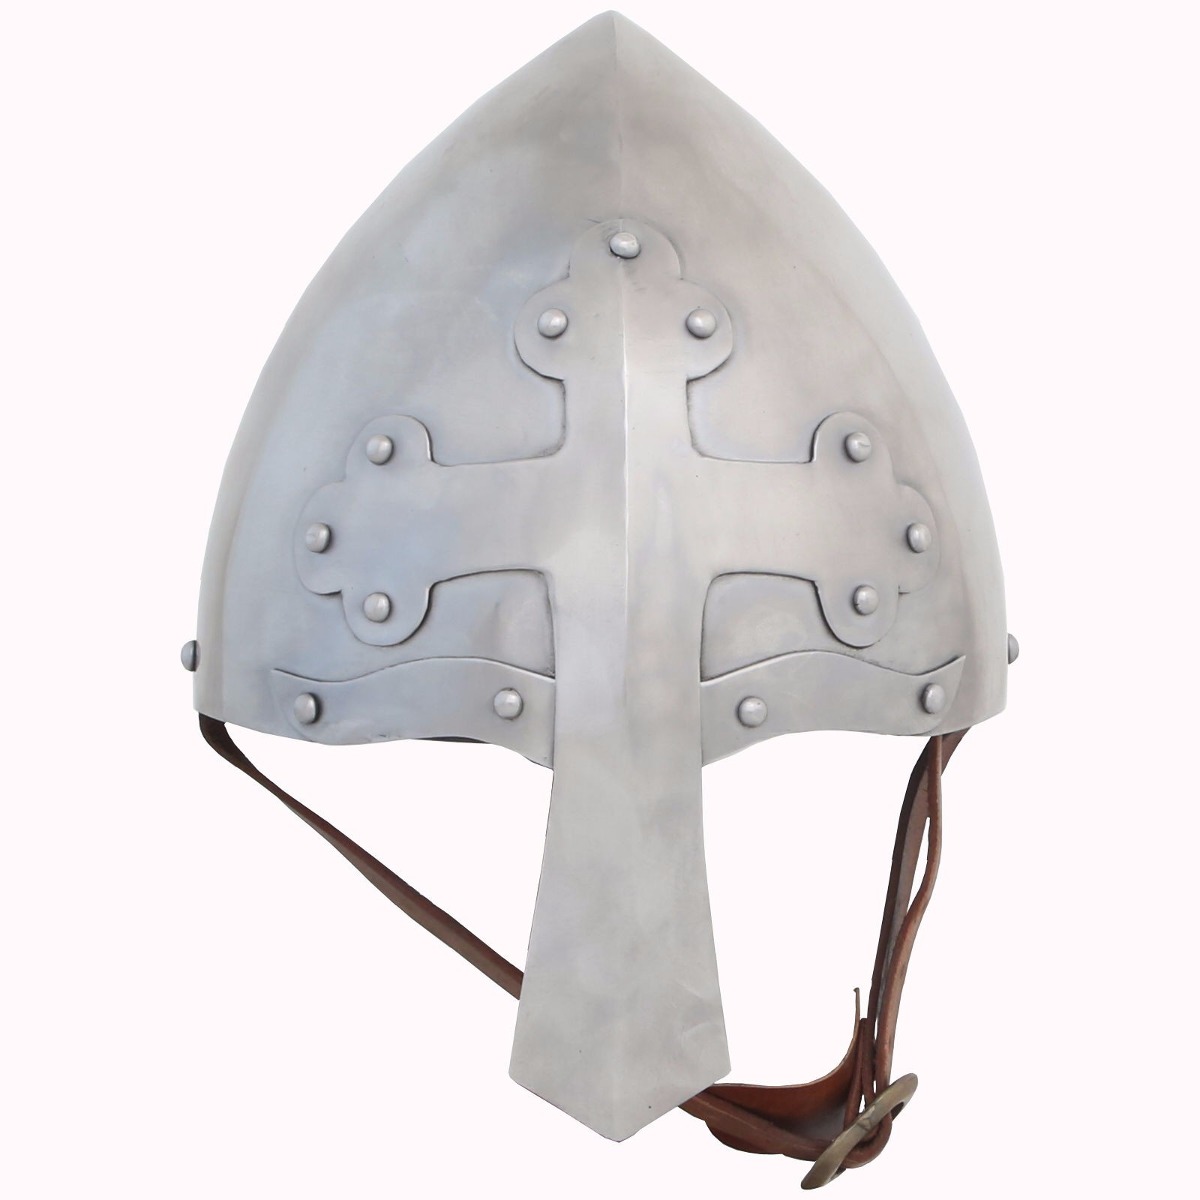 Casco Medieval Nasal Templario Cruzado Usable Nuevo 112.000 en Mercado Libre